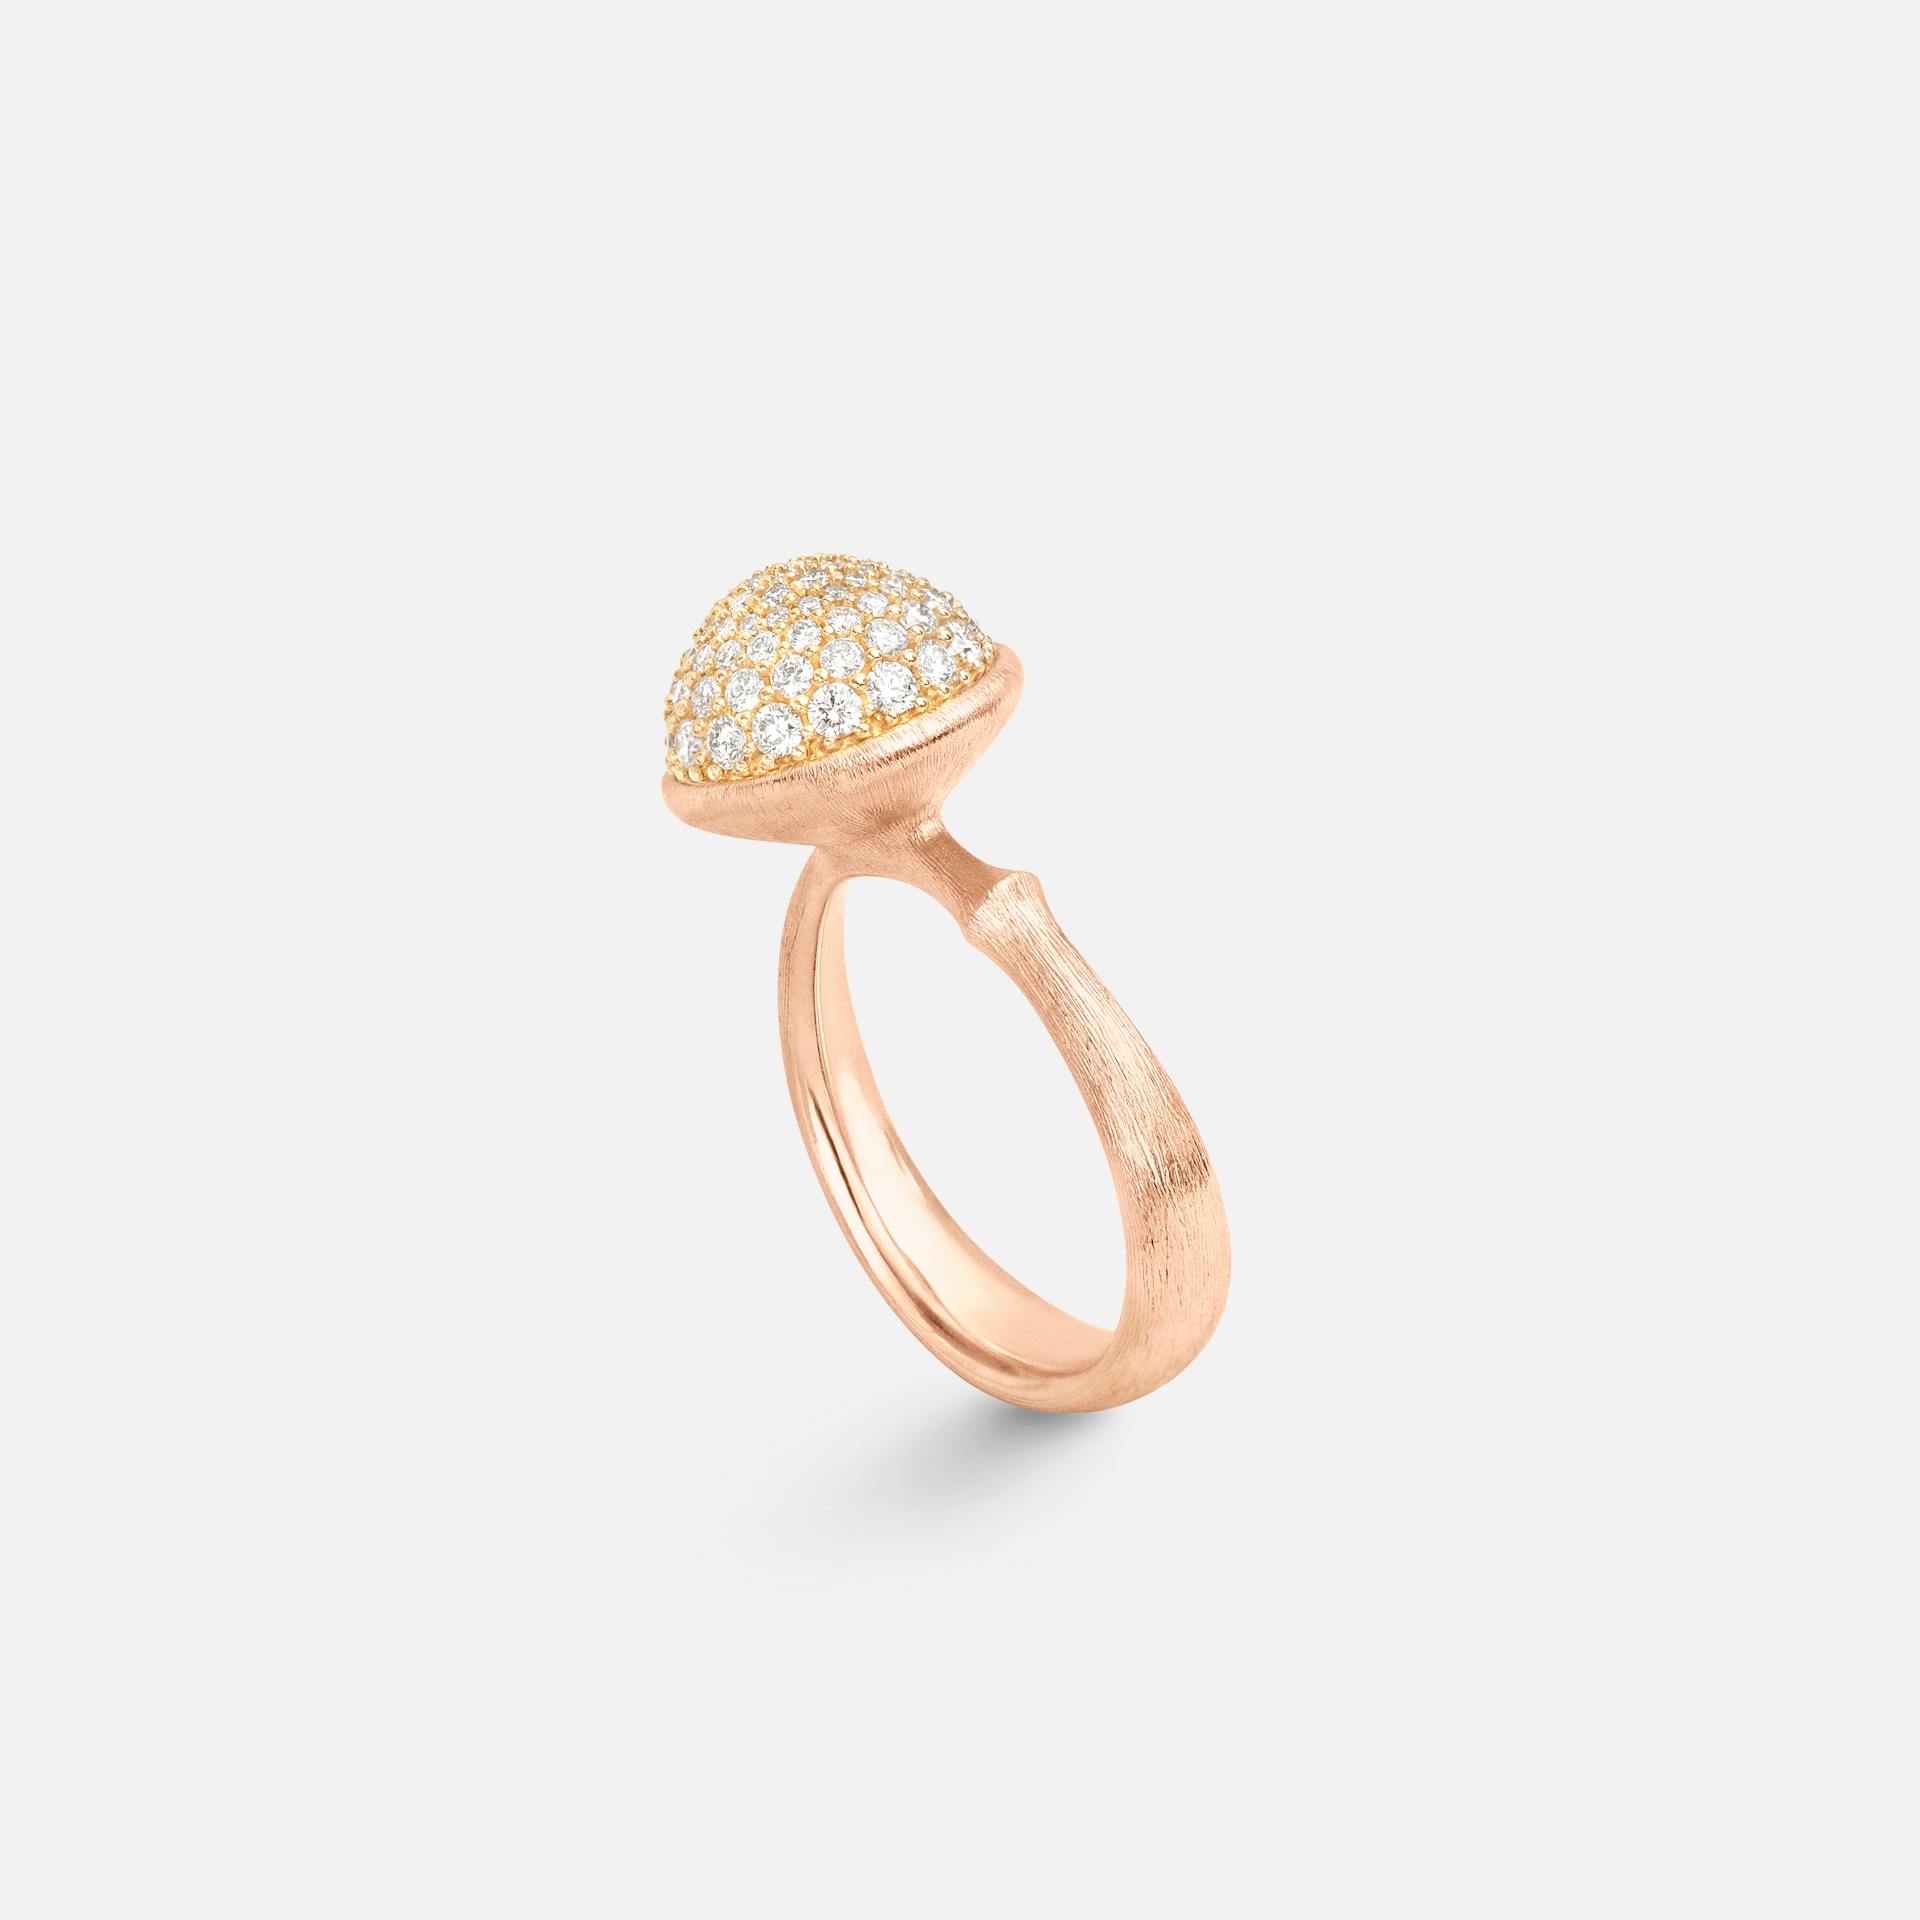 Lotus Ring Large in 18 Karat Rose Gold with Diamonds  |  Ole Lynggaard Copenhagen